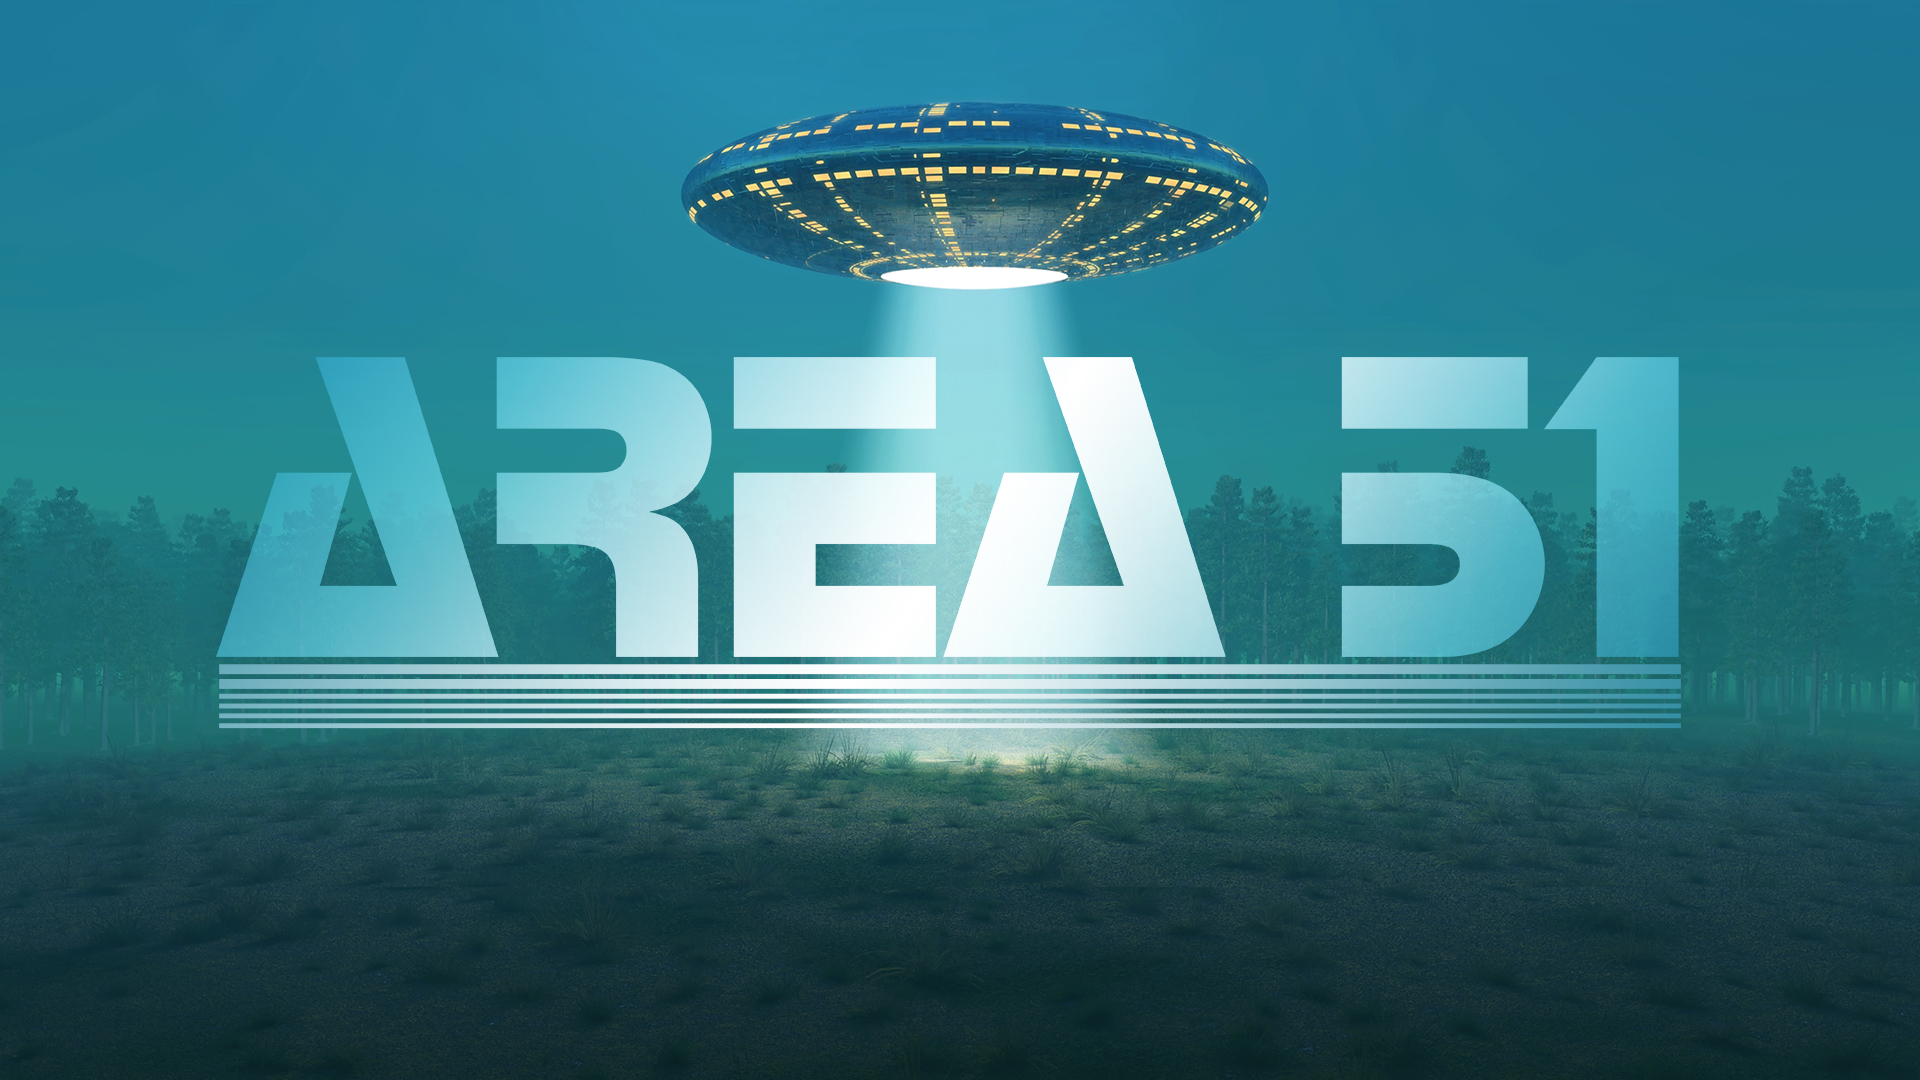   Area 51